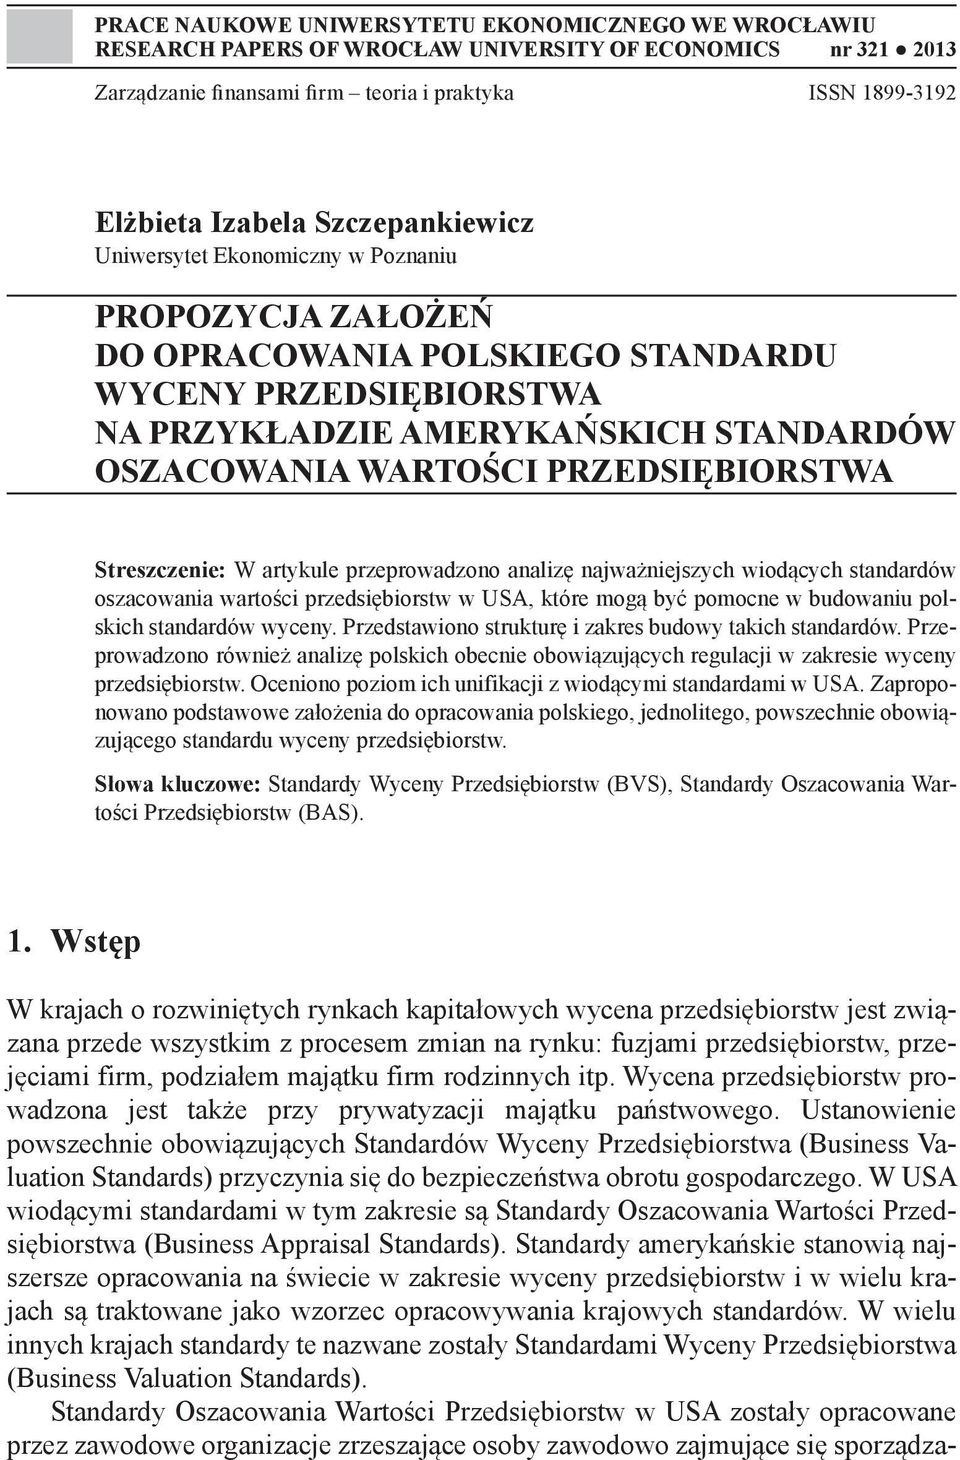 PRZEDSIĘBIORSTWA Streszczenie: W artykule przeprowadzono analizę najważniejszych wiodących standardów oszacowania wartości przedsiębiorstw w USA, które mogą być pomocne w budowaniu polskich